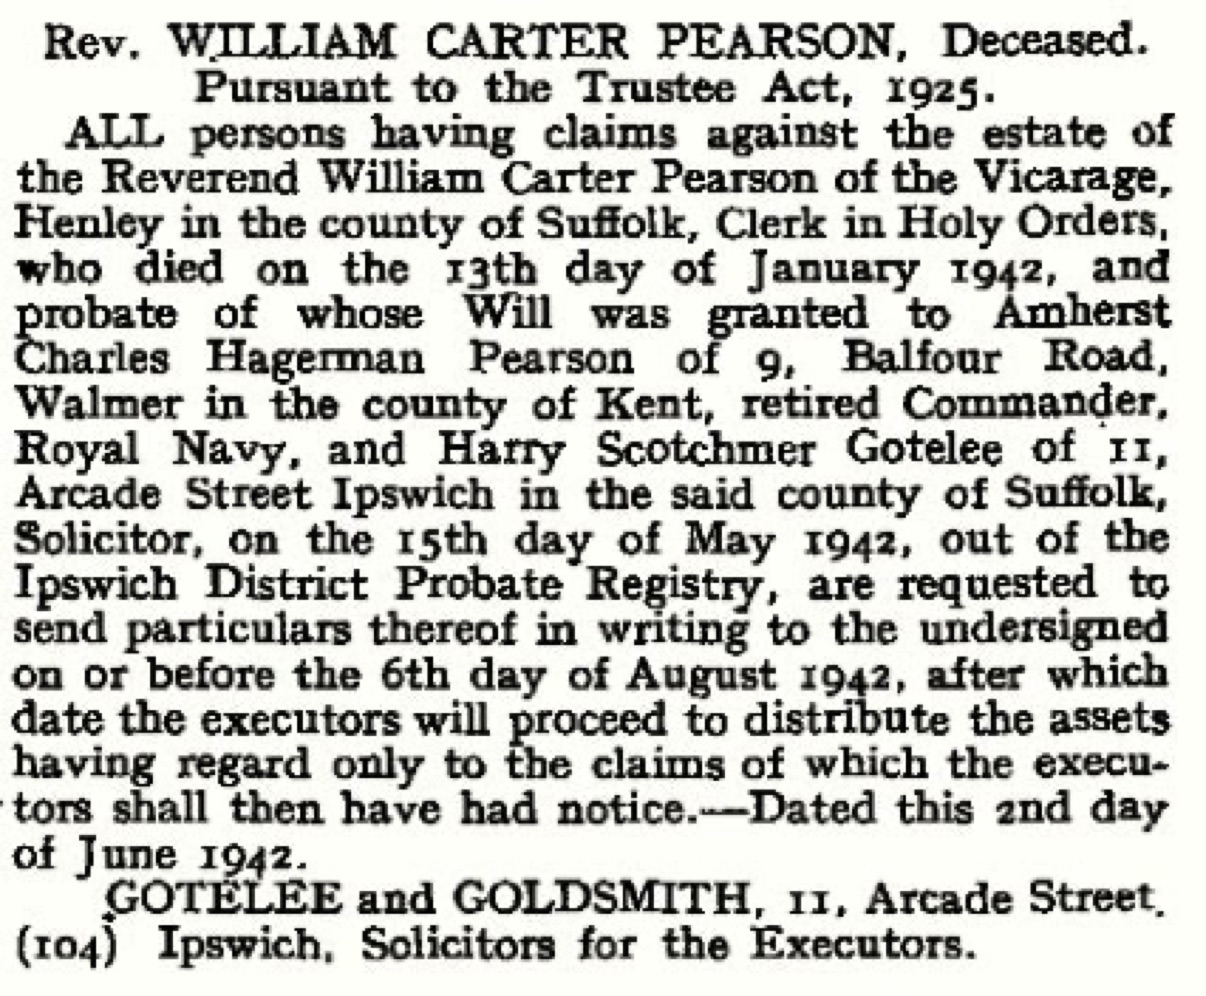 Obituary
The London Gazette, 5th June 1942